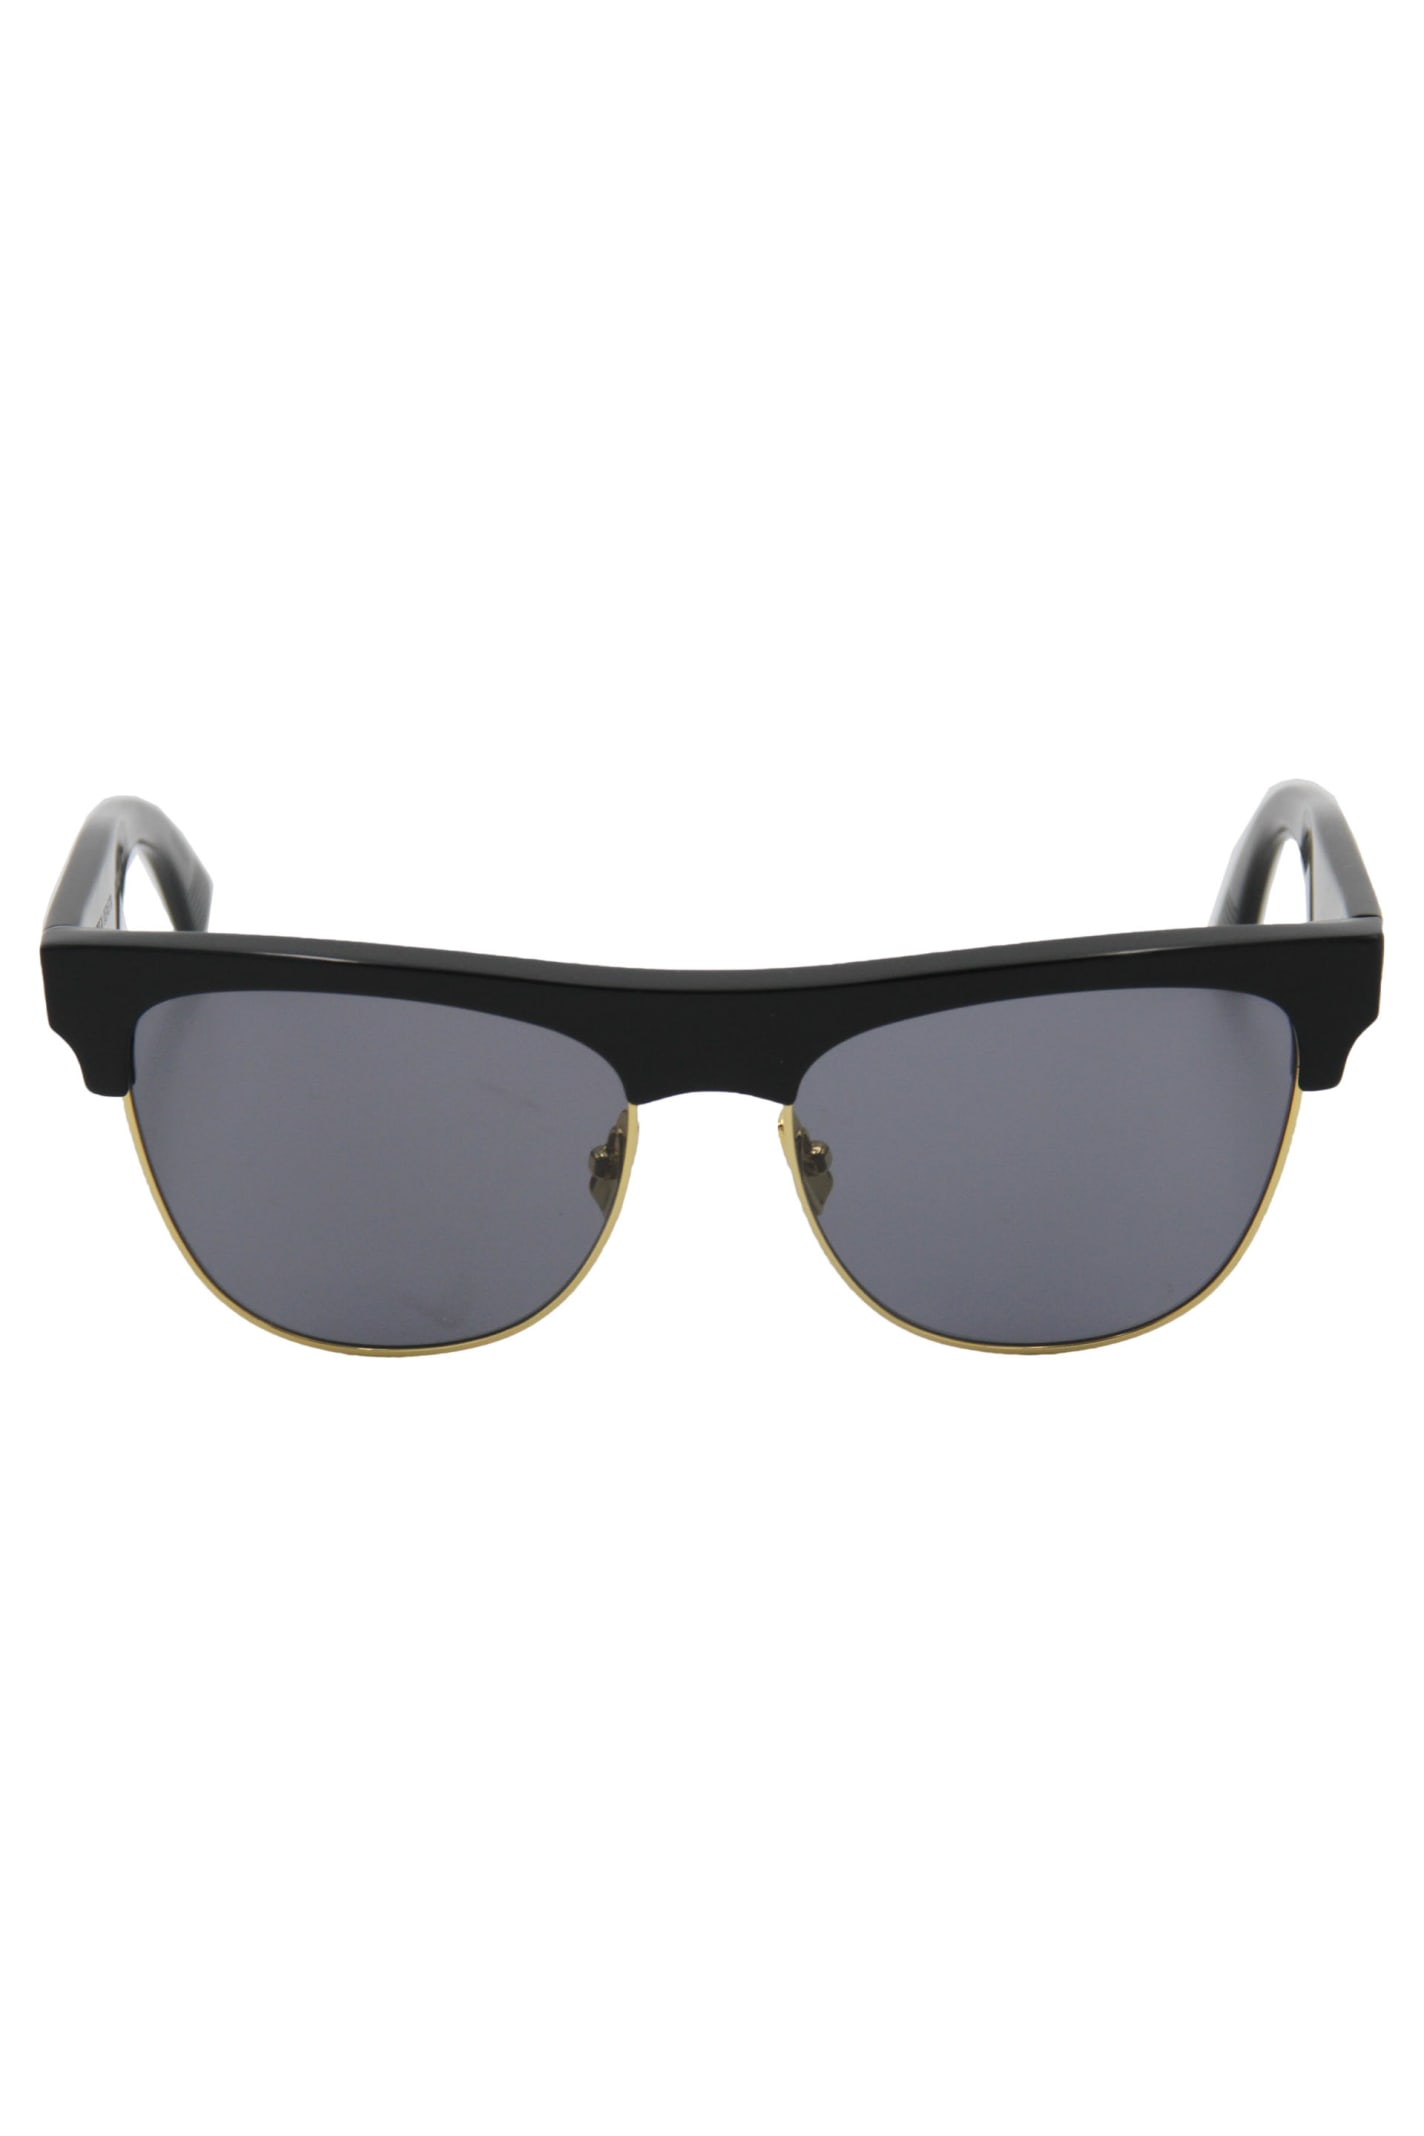 Bottega Veneta Squared Sunglasses In Black